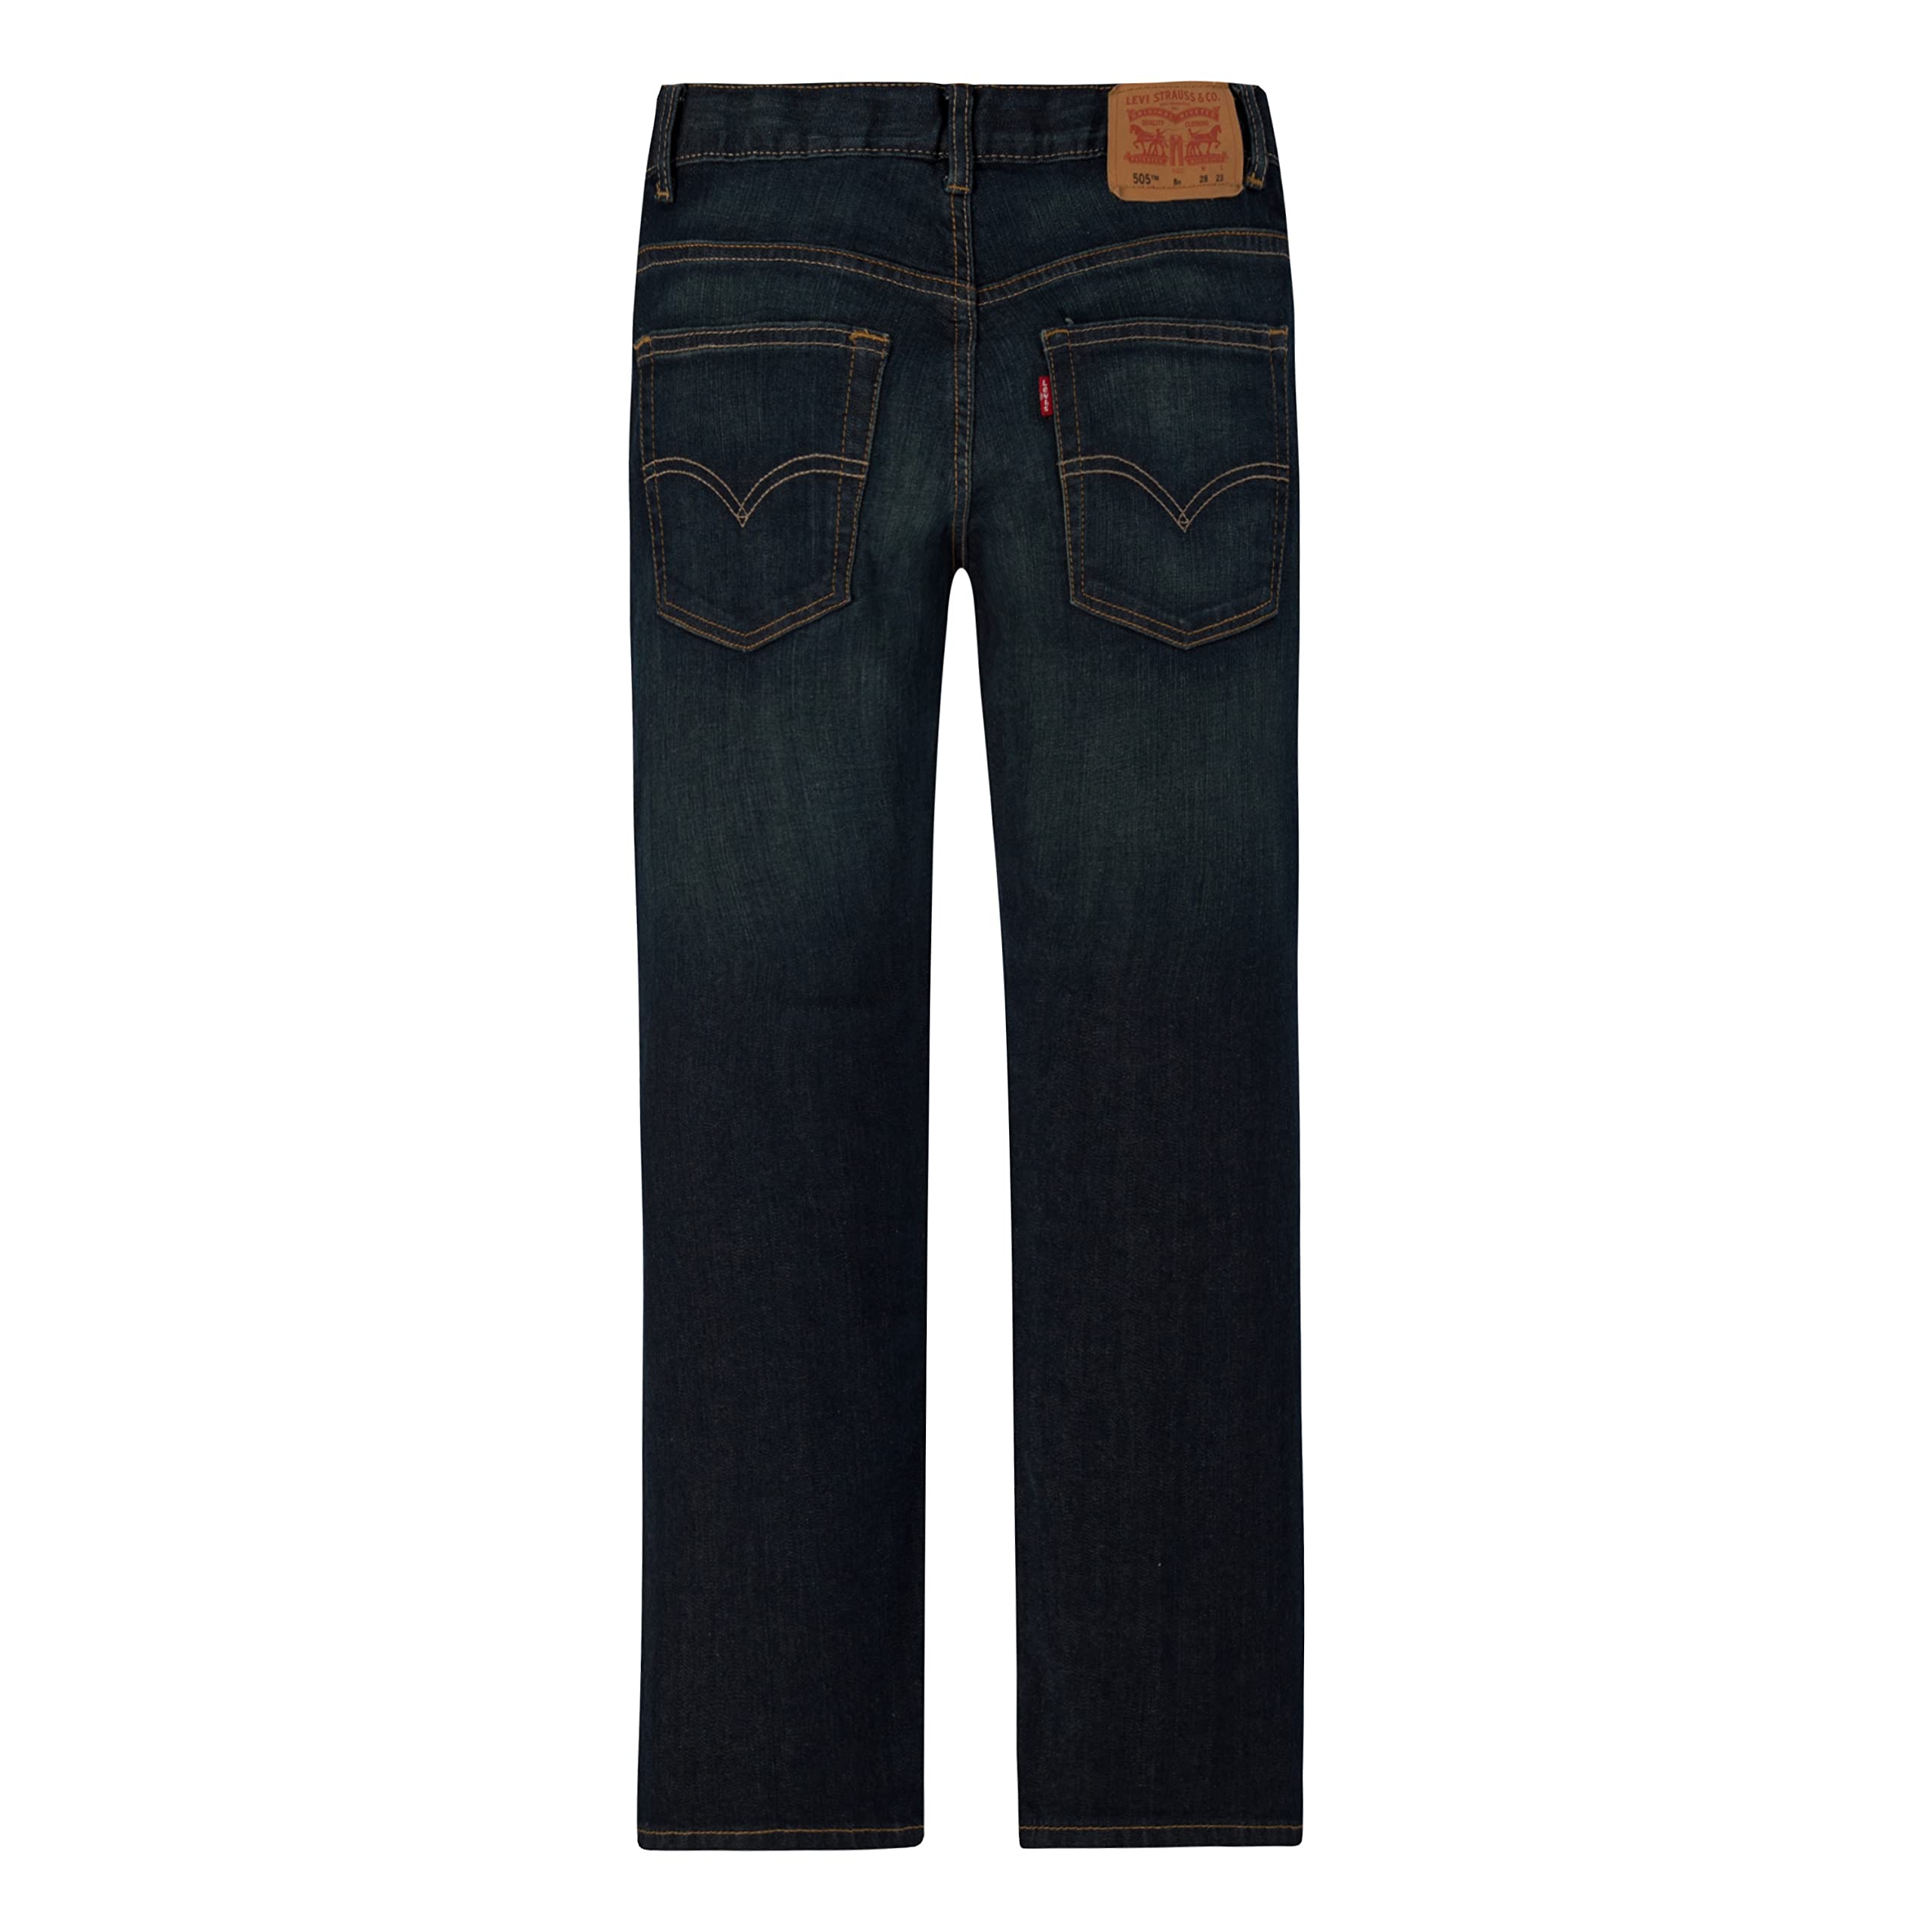 Levi's Boys' 505 Regular Fit Jeans, Cash, 10